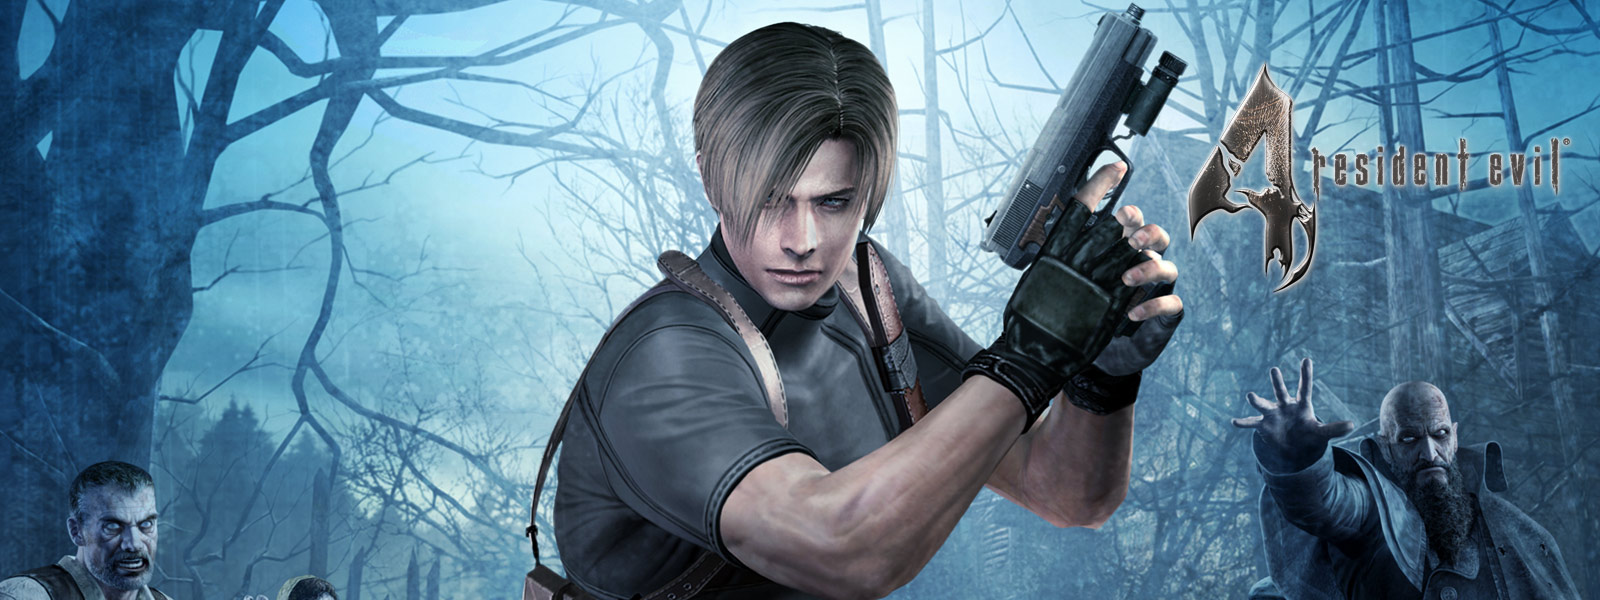 Resident Evil 4, персонаж с пистолетом в руке, окруженный зомби, в темном лесу